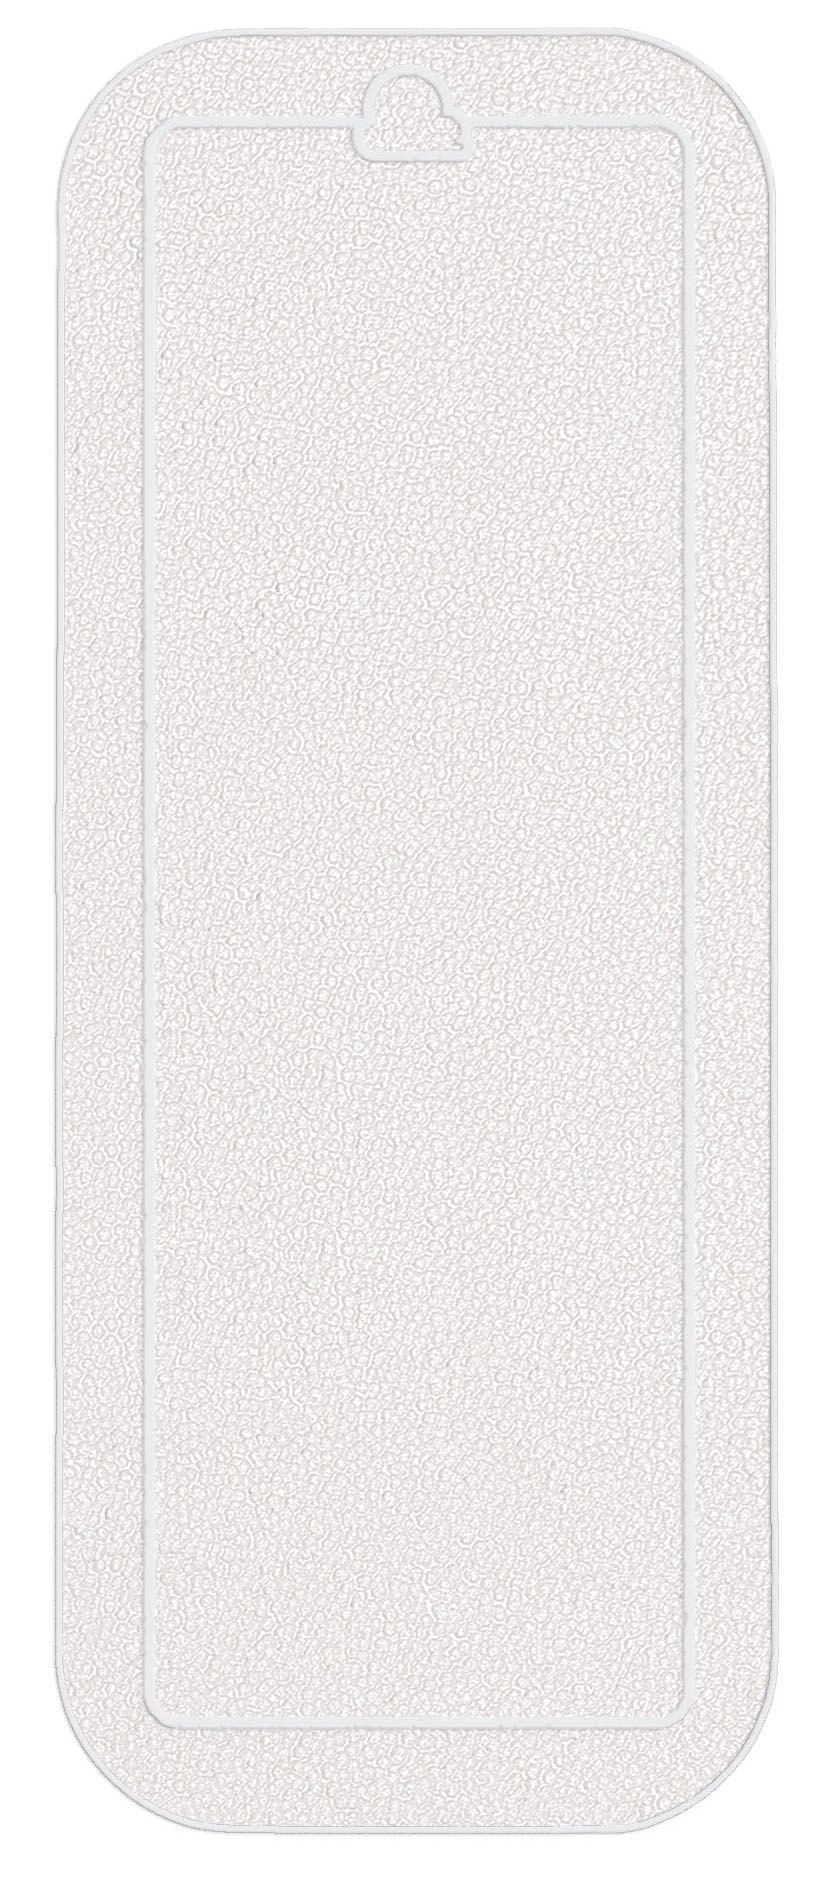 Duscheinlage, Java-Plus Weiß, 55x 55 cm